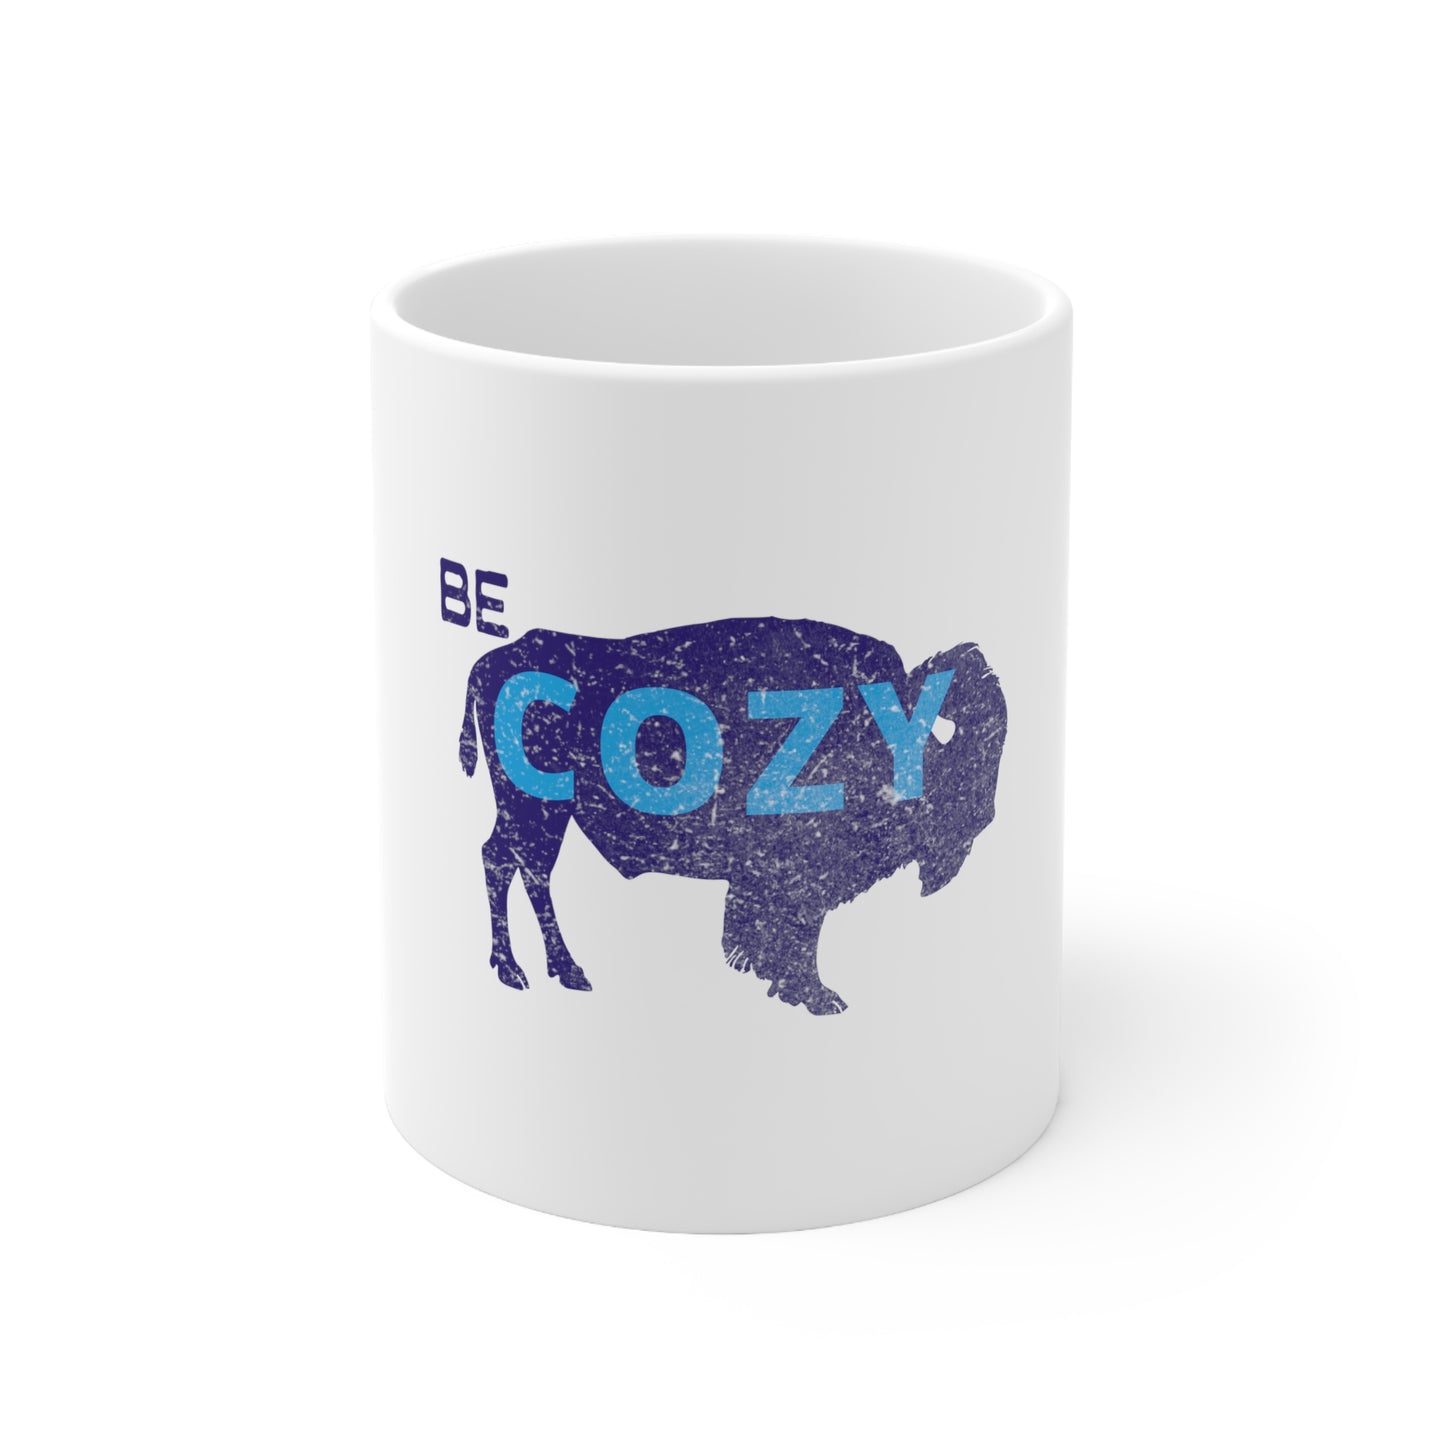 Walden "Be Cozy" Ceramic Mug